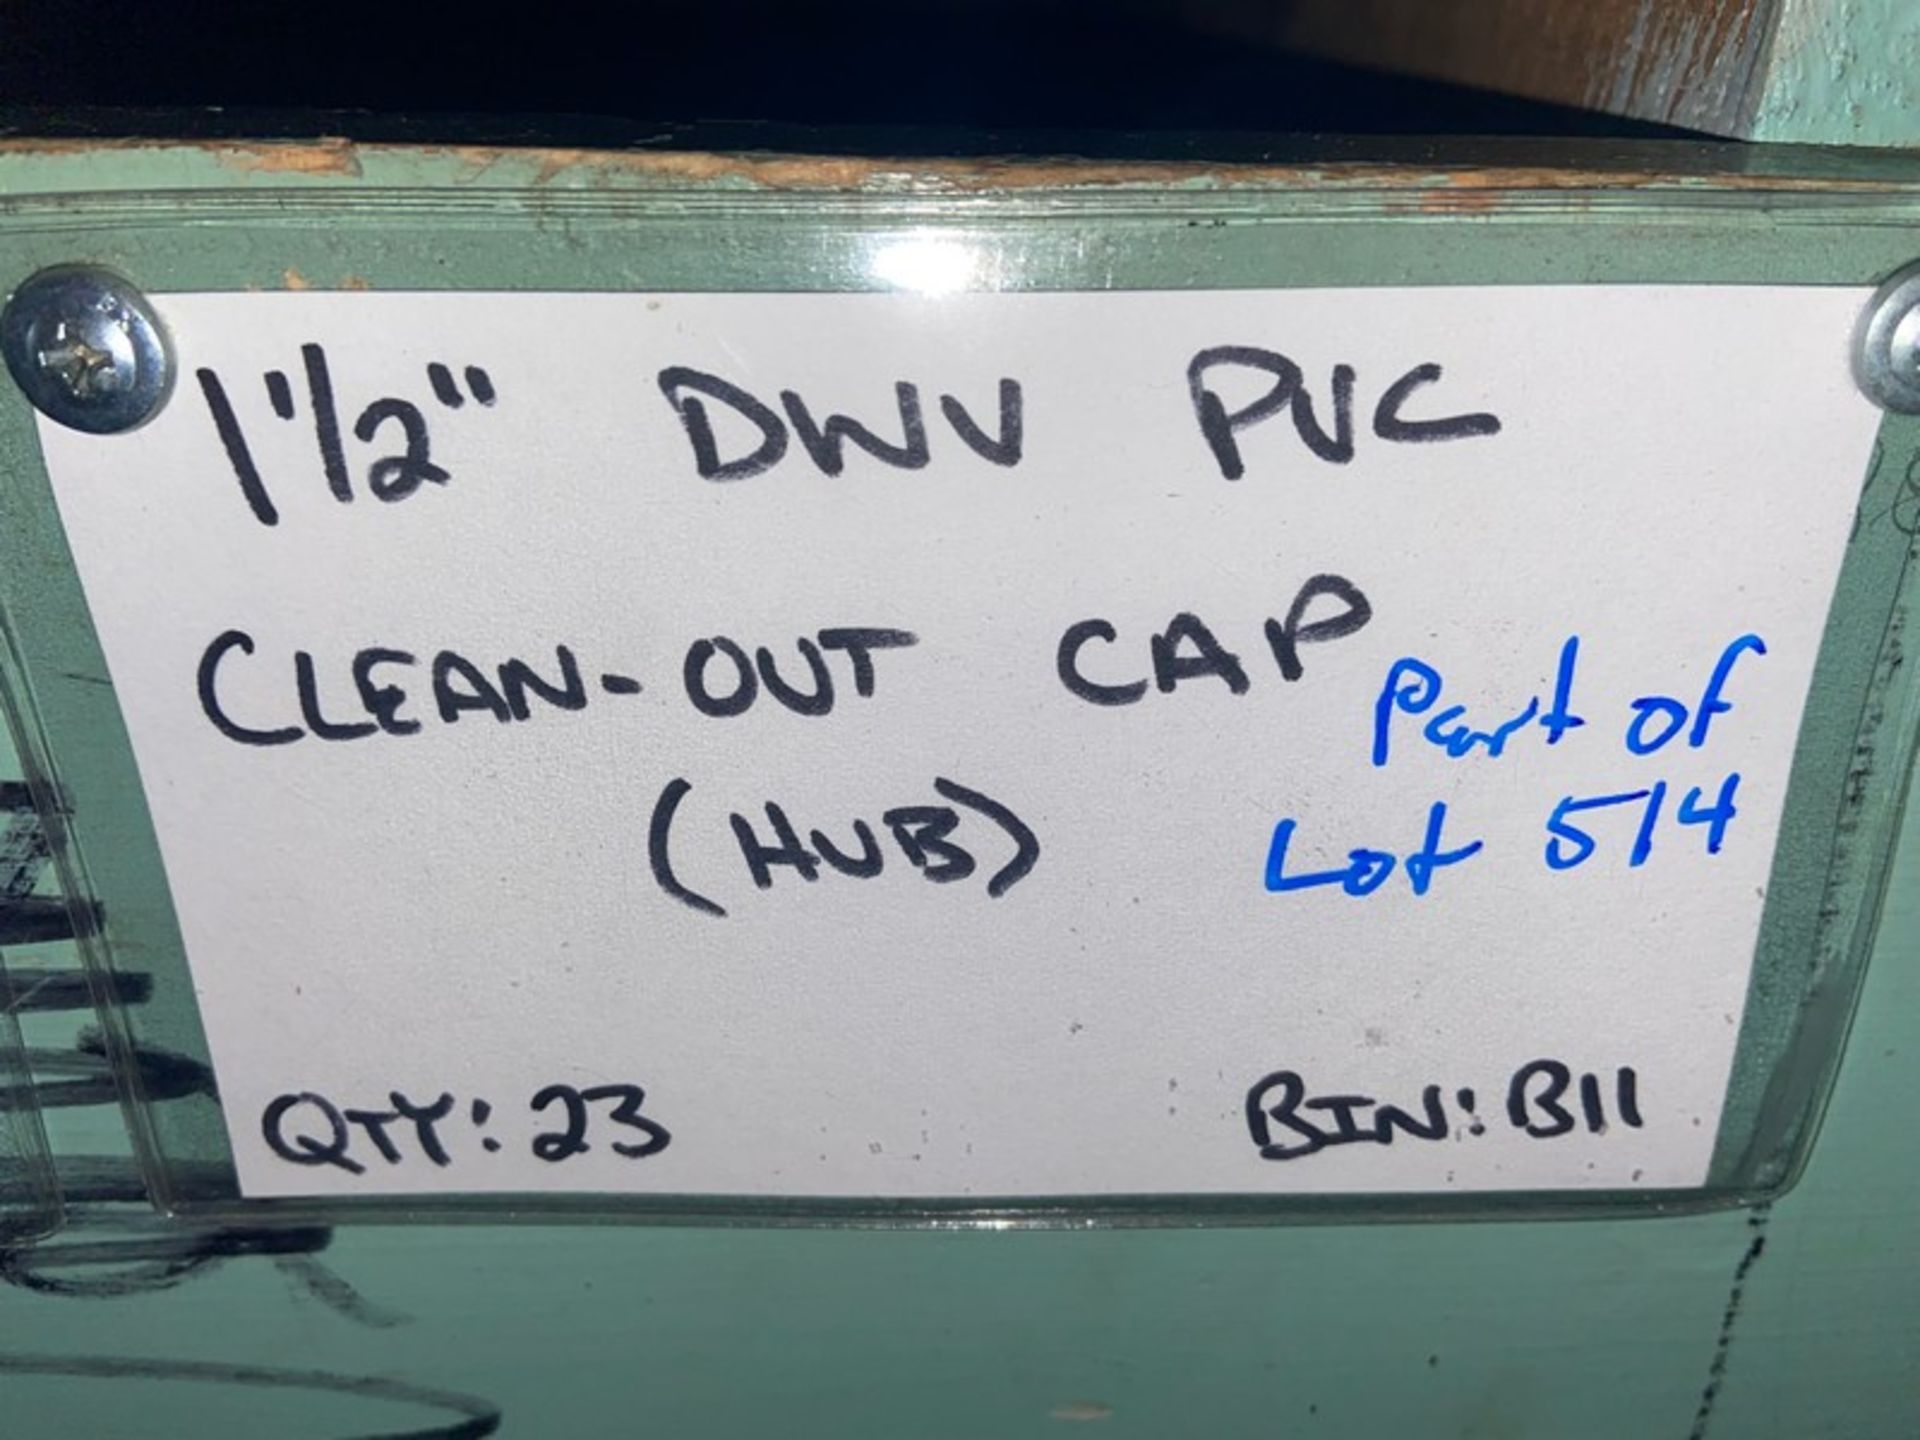 (5) 1 1/2” DWV PVC Clean-out CAP (STREET) (Bin: B11), Includes (23) 1 1/2” DWV PVC Clean-out CAP ( - Bild 9 aus 9